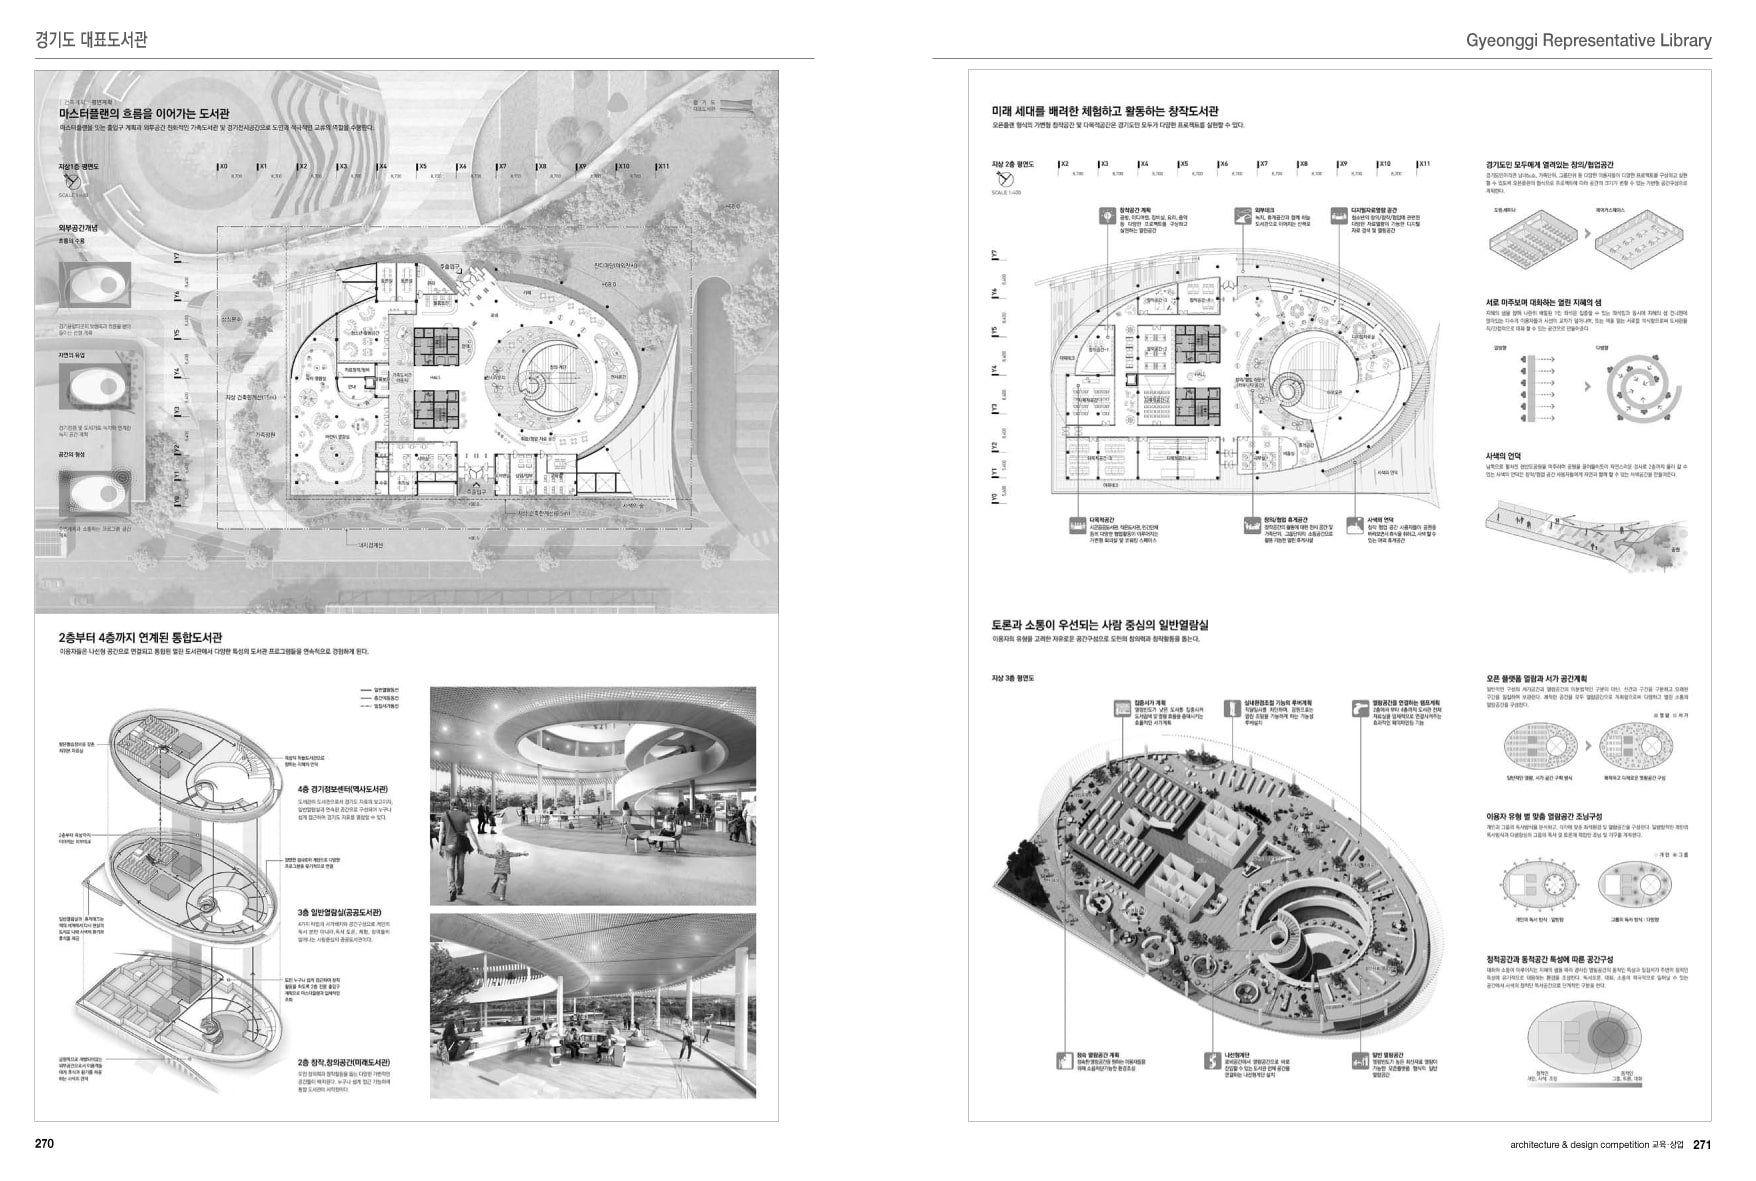 Architecture & Design Competition 3: